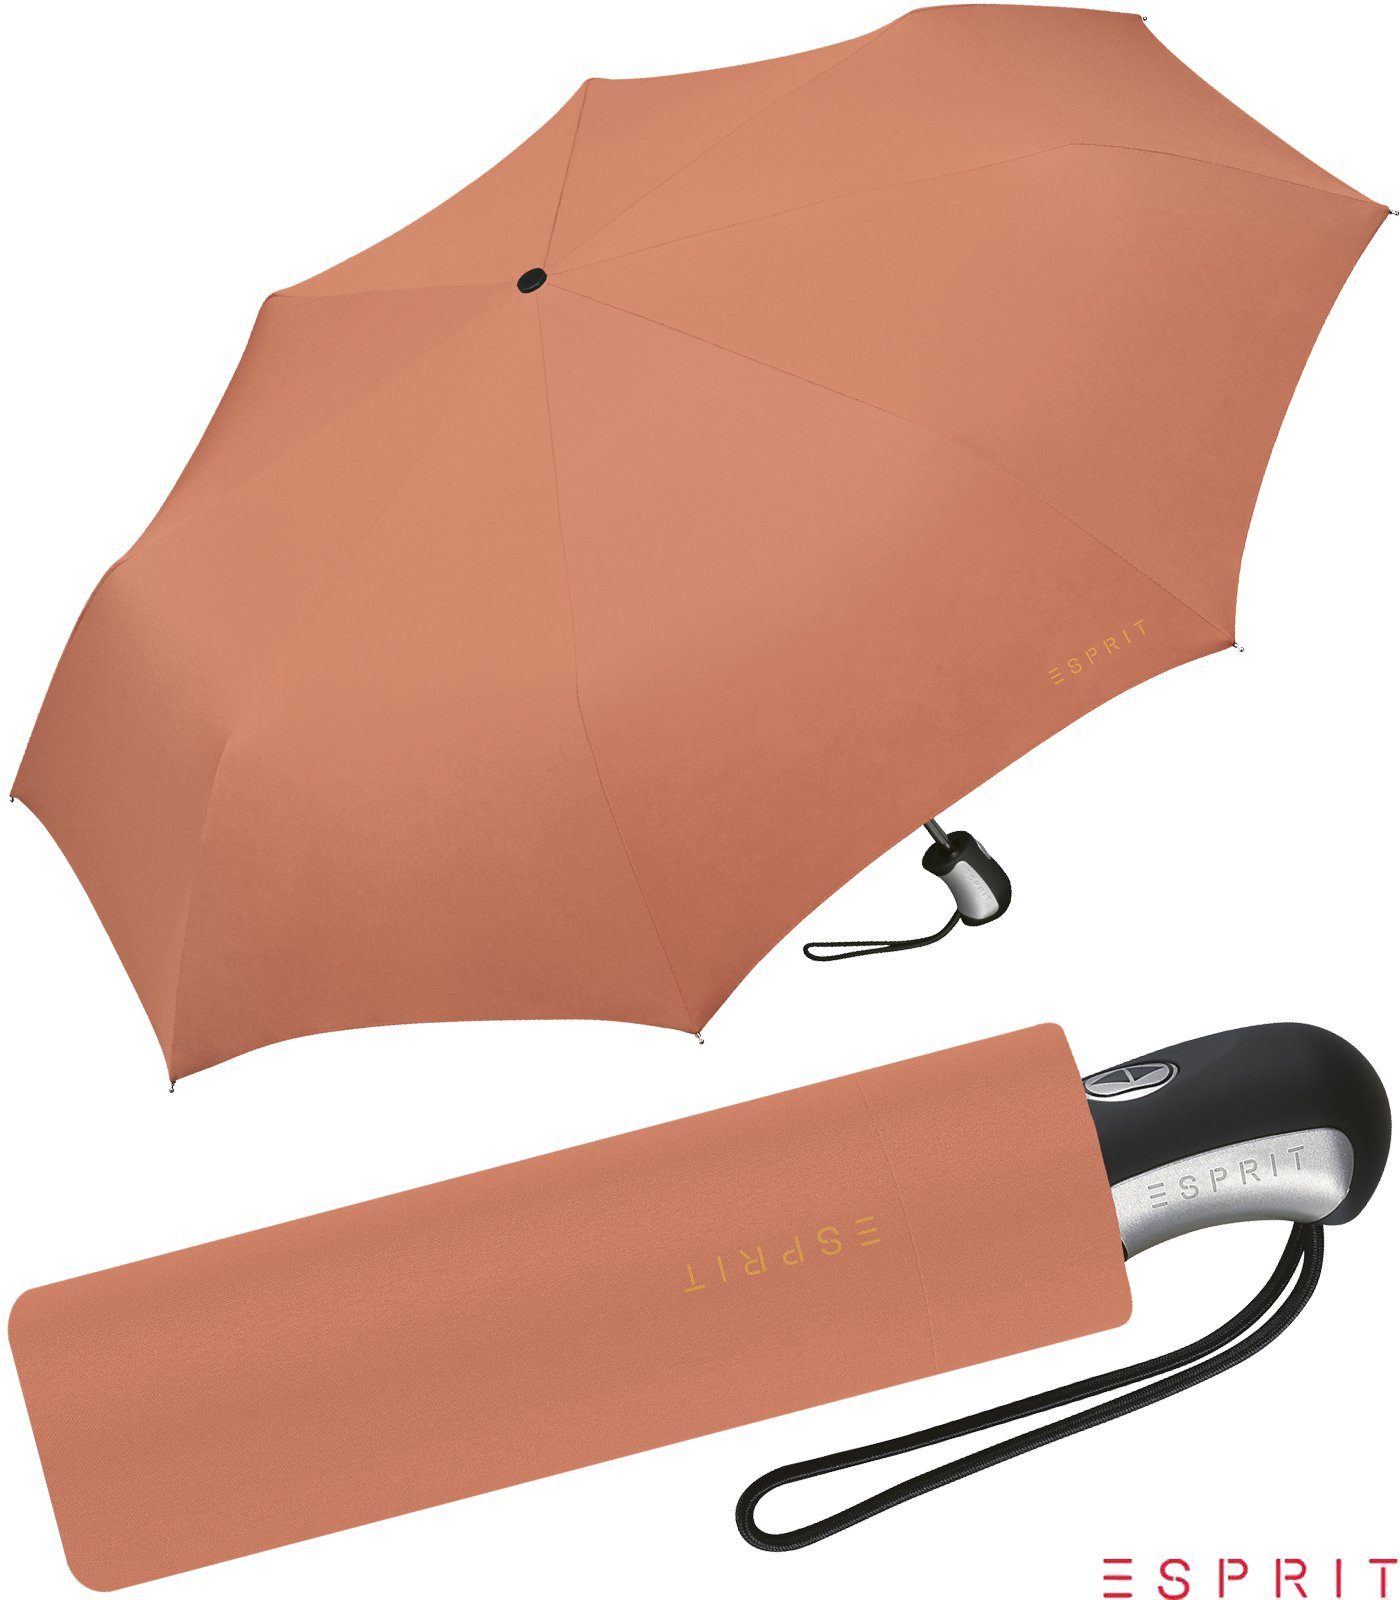 Schirm für Esprit - brandy mit Taschenregenschirm kräftigen in Farben Automatik, apricot schöner orange Auf-Zu Damen